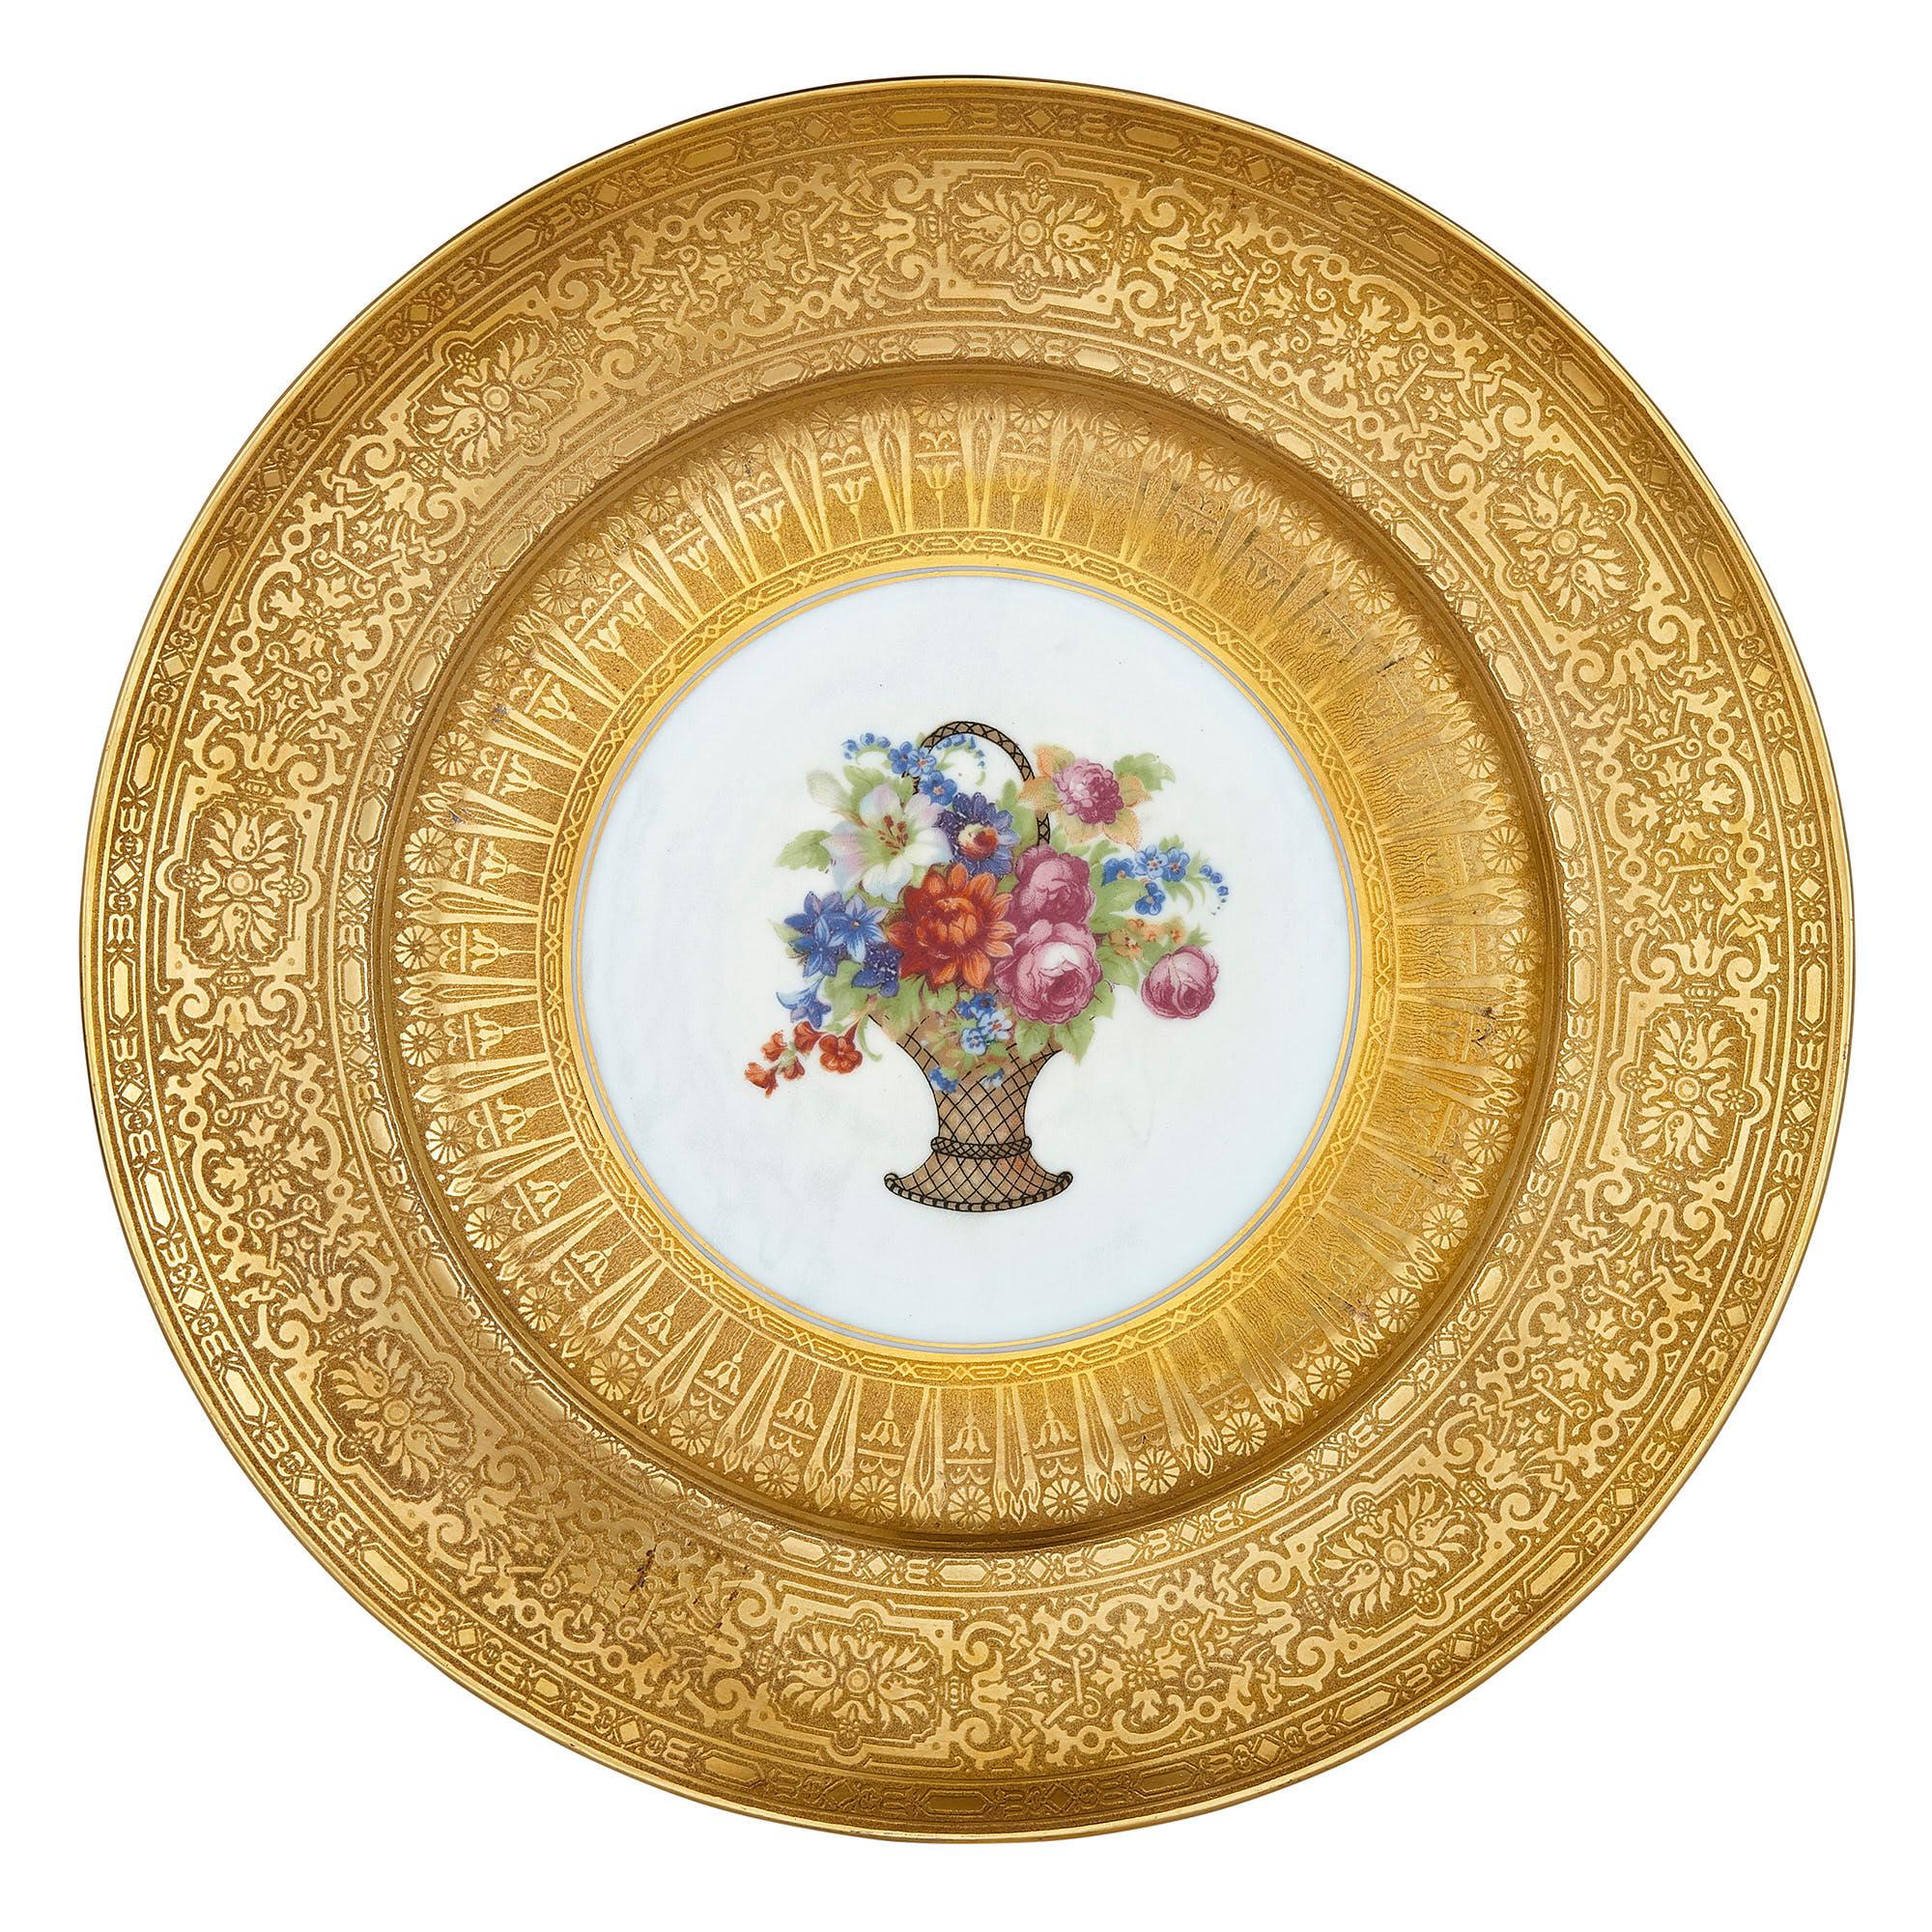 Douze assiettes à dîner en porcelaine de Bohême dorée par P.A.L.T
Tchèque, début du 20e siècle
Mesures : Hauteur 2,5 cm, diamètre 27 cm

Ce rare ensemble d'assiettes en porcelaine du début du 20e siècle est peut-être la plus belle œuvre de la